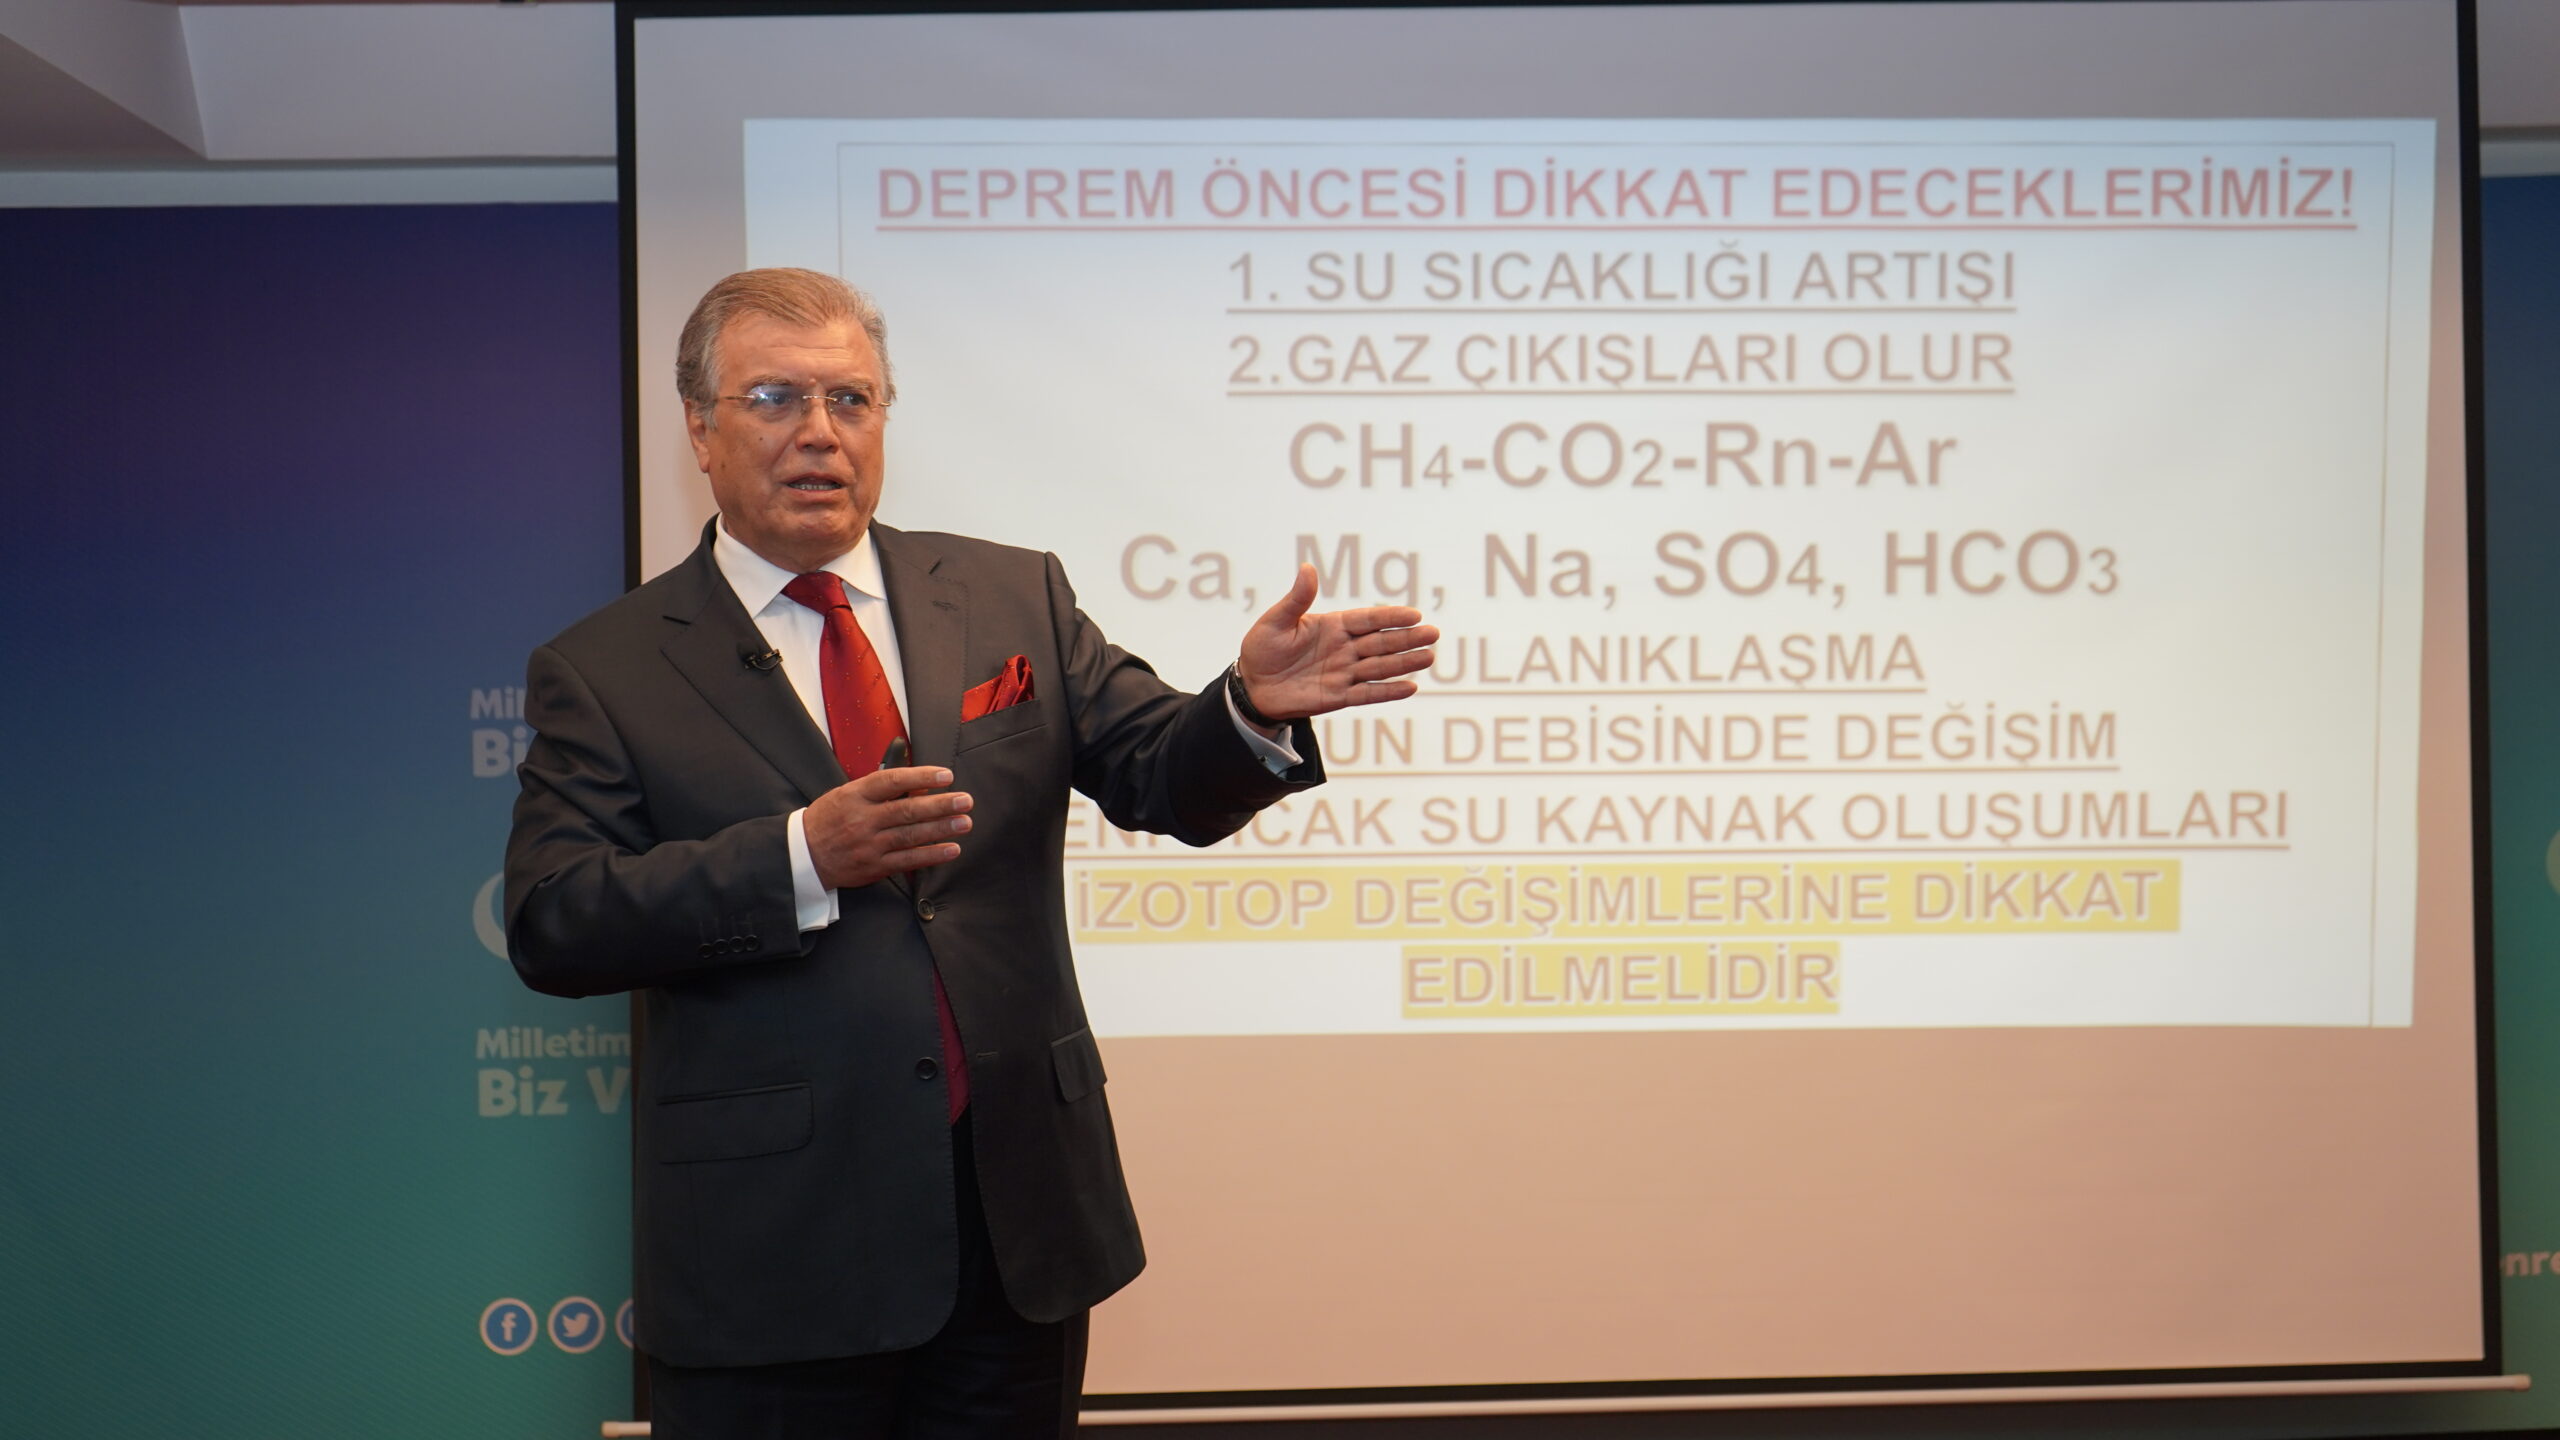 Prof. Dr. Doğan Aydal: Acilen Deprem Erken Uyarı Merkezi kurulmalı!  